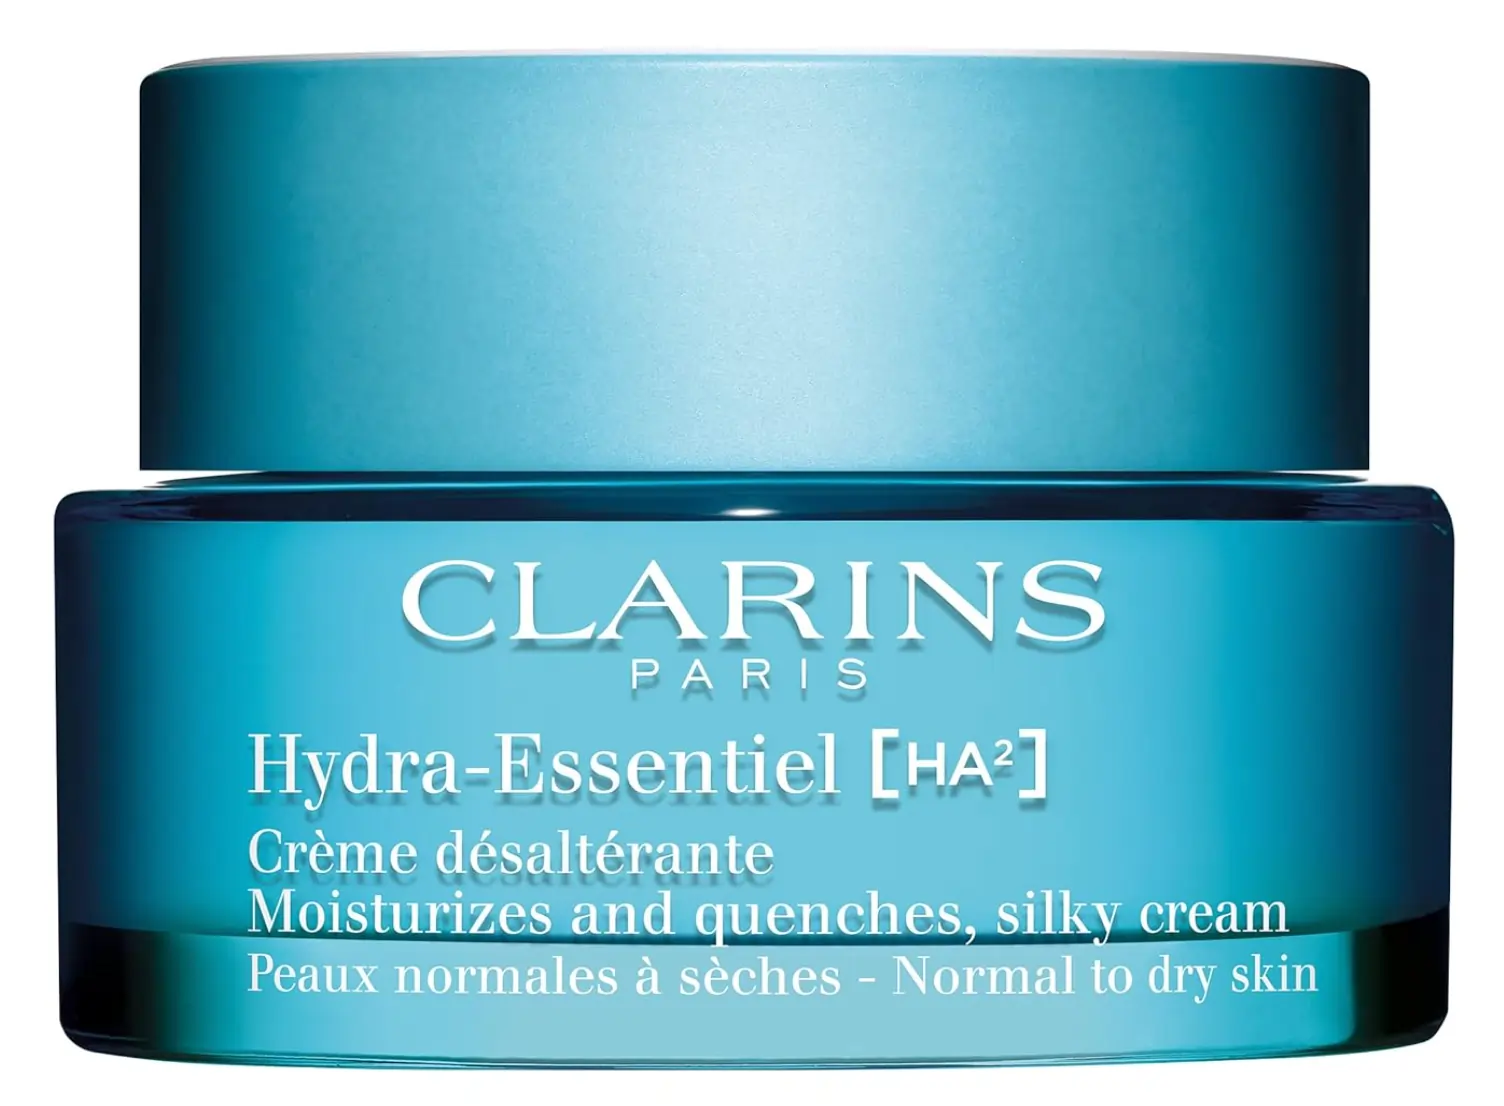 A close second in the Clinique vs Clarins moisturizer comparison, the Clarins Hydra-Essentiel.